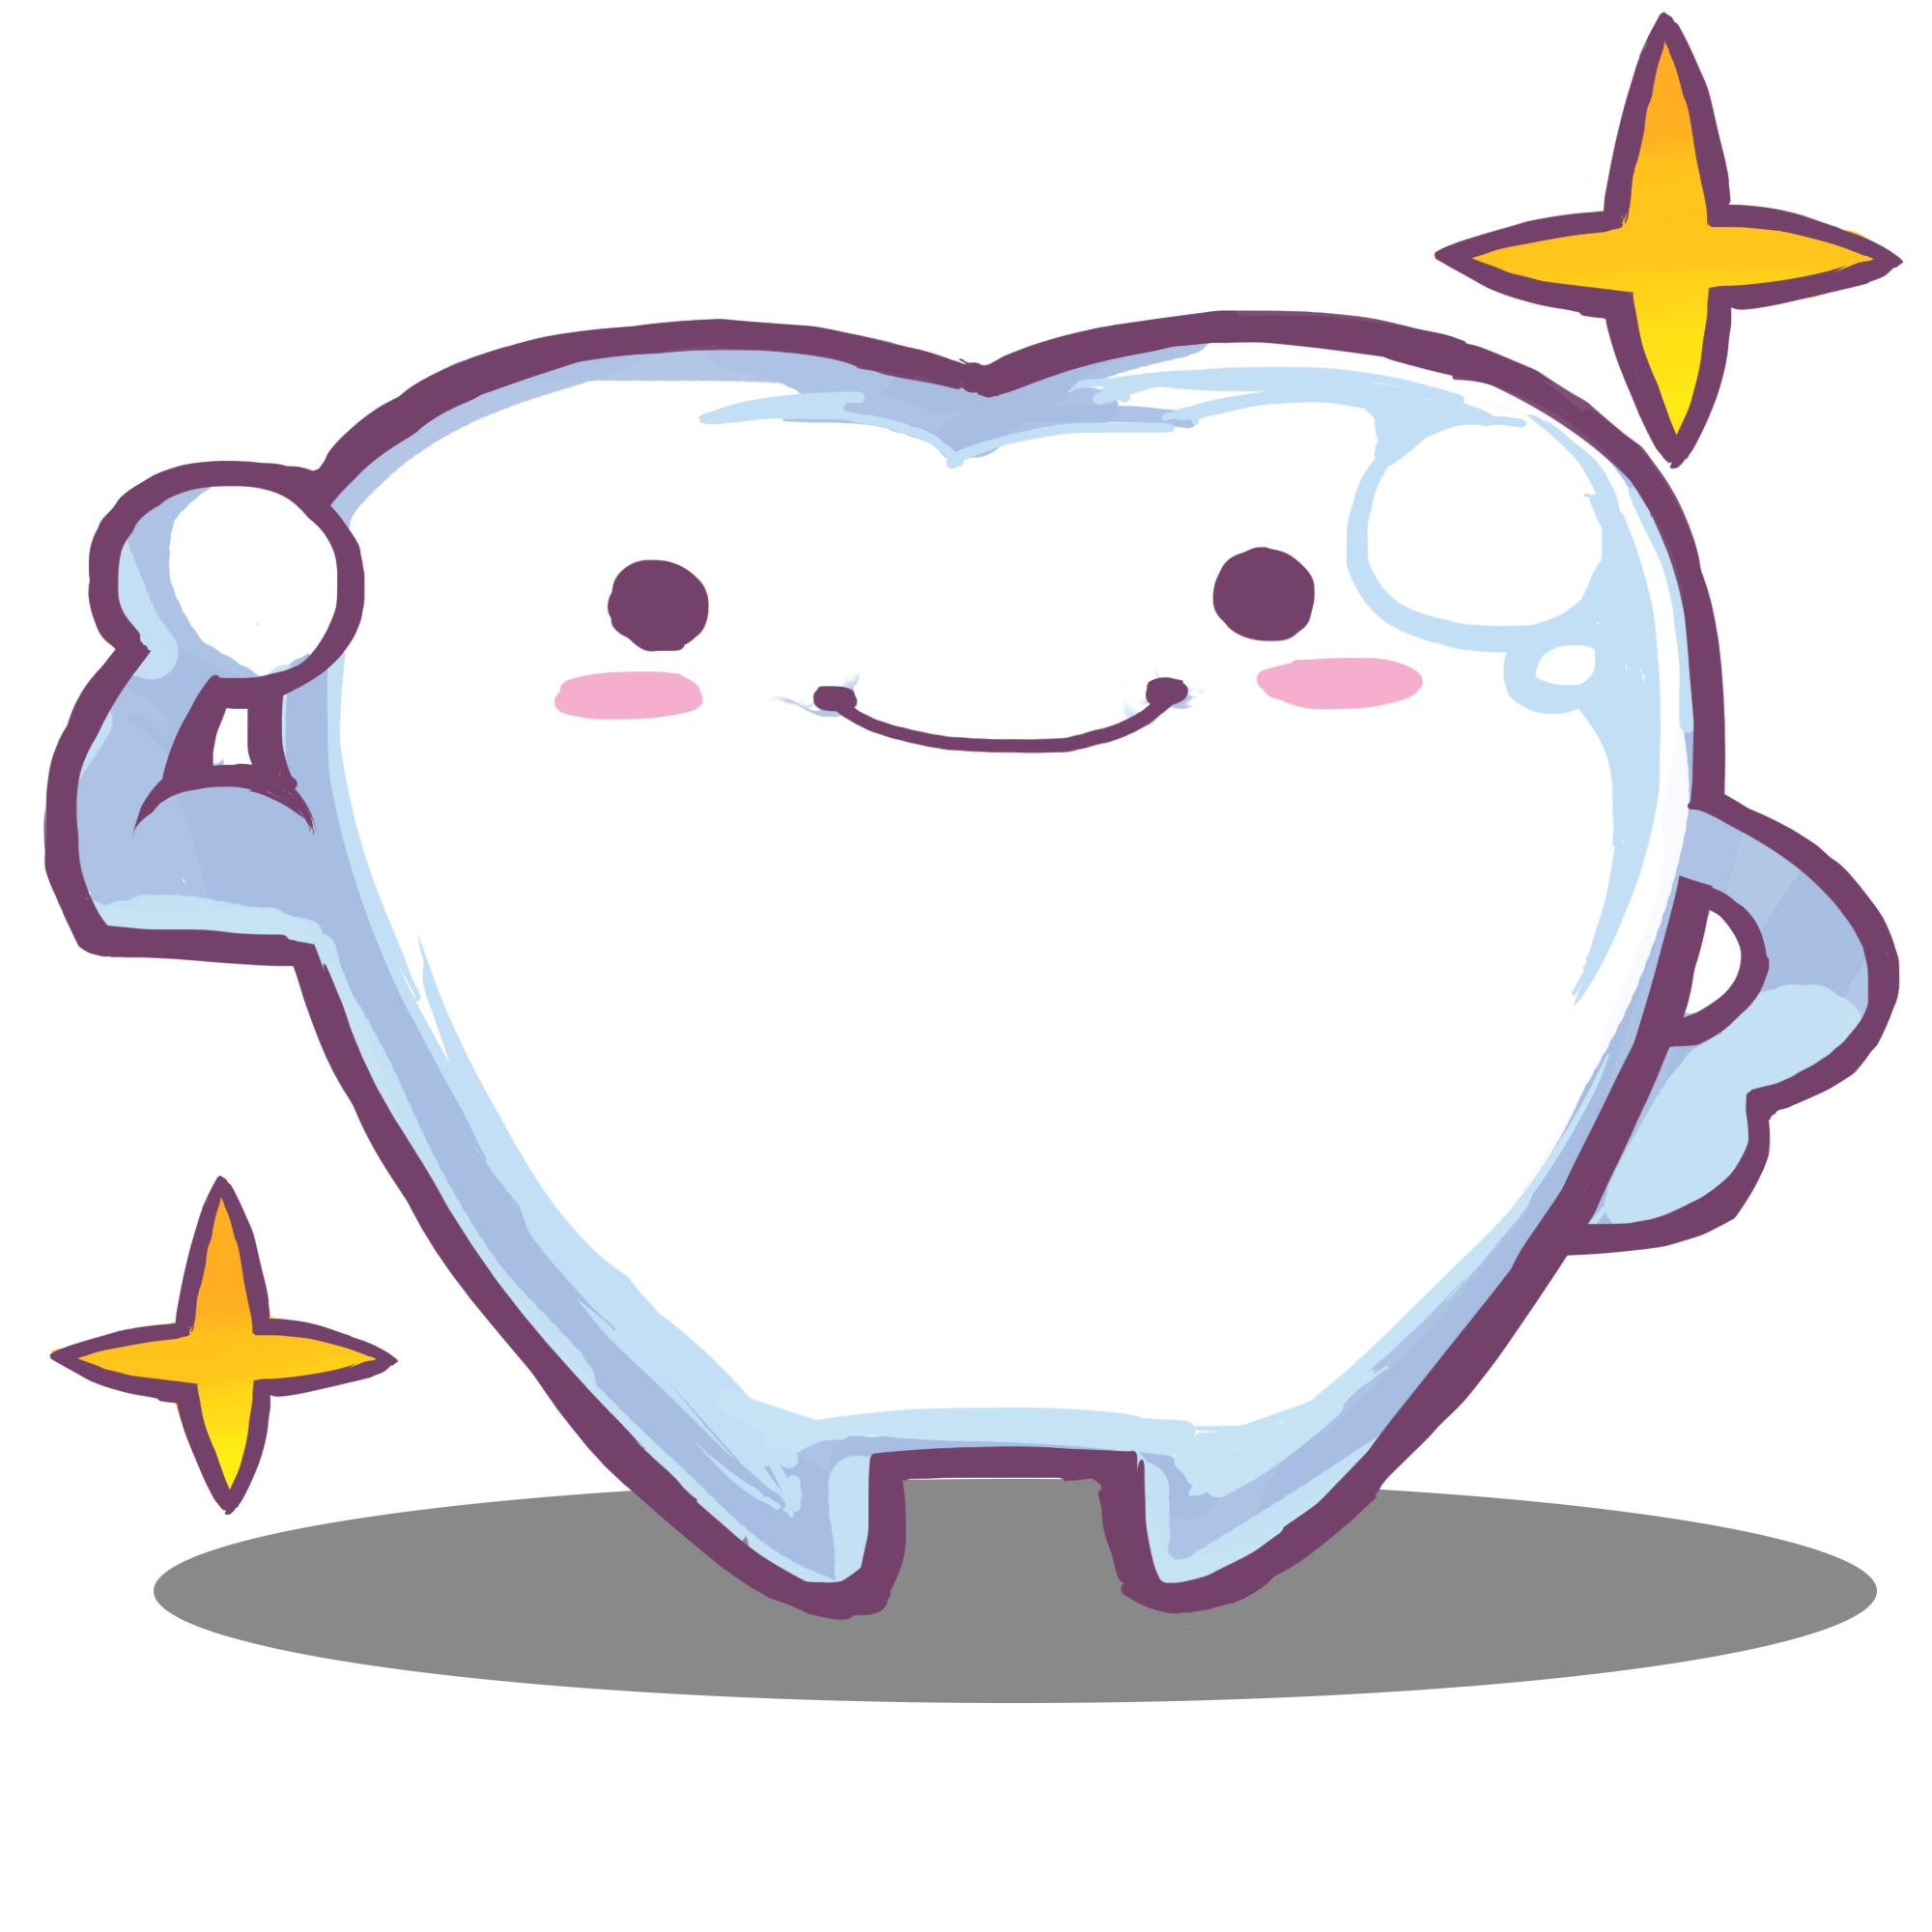 ６歳臼歯は 歯の王様 あおばヒロ歯科 西宮北口 一般歯科 小児歯科 入れ歯 審美 ホワイトニング インプラント